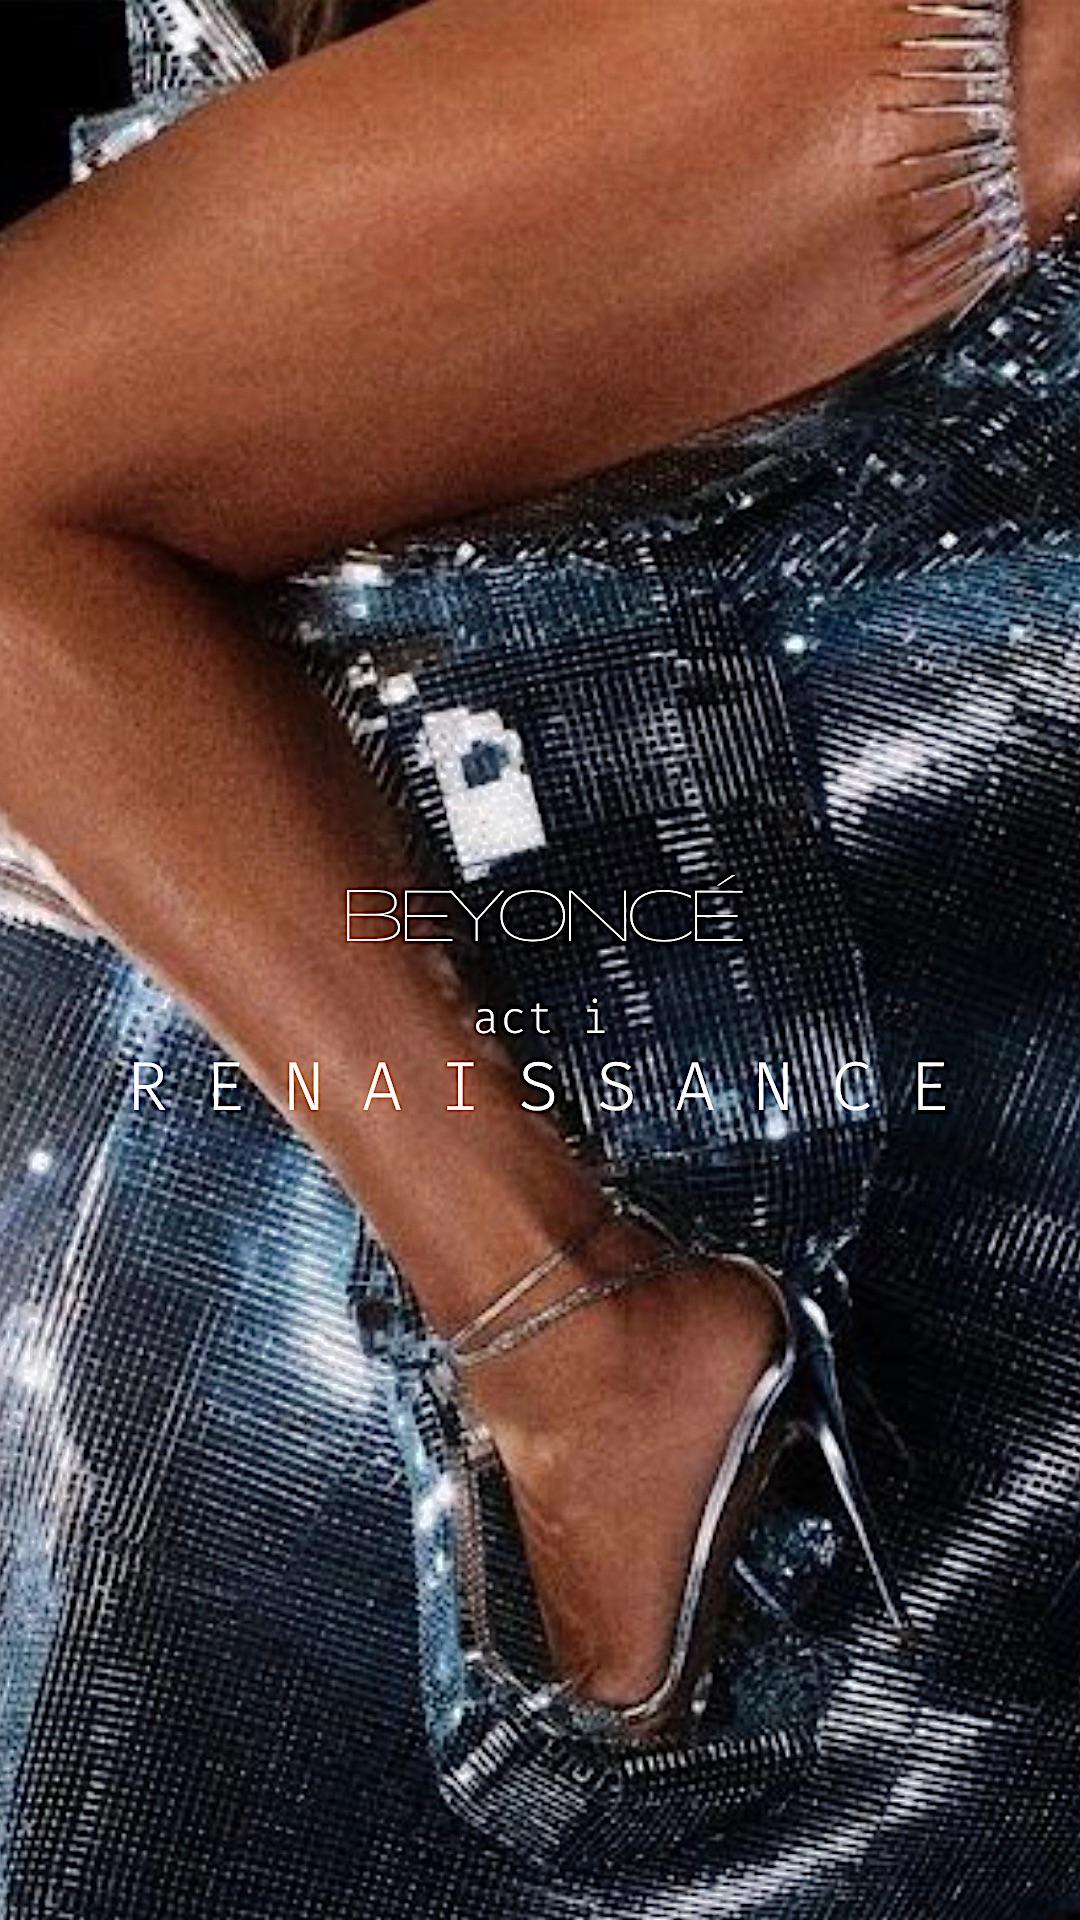 Beyoncé, act 1: Renaissance. The cover art for the new album. - Beyonce